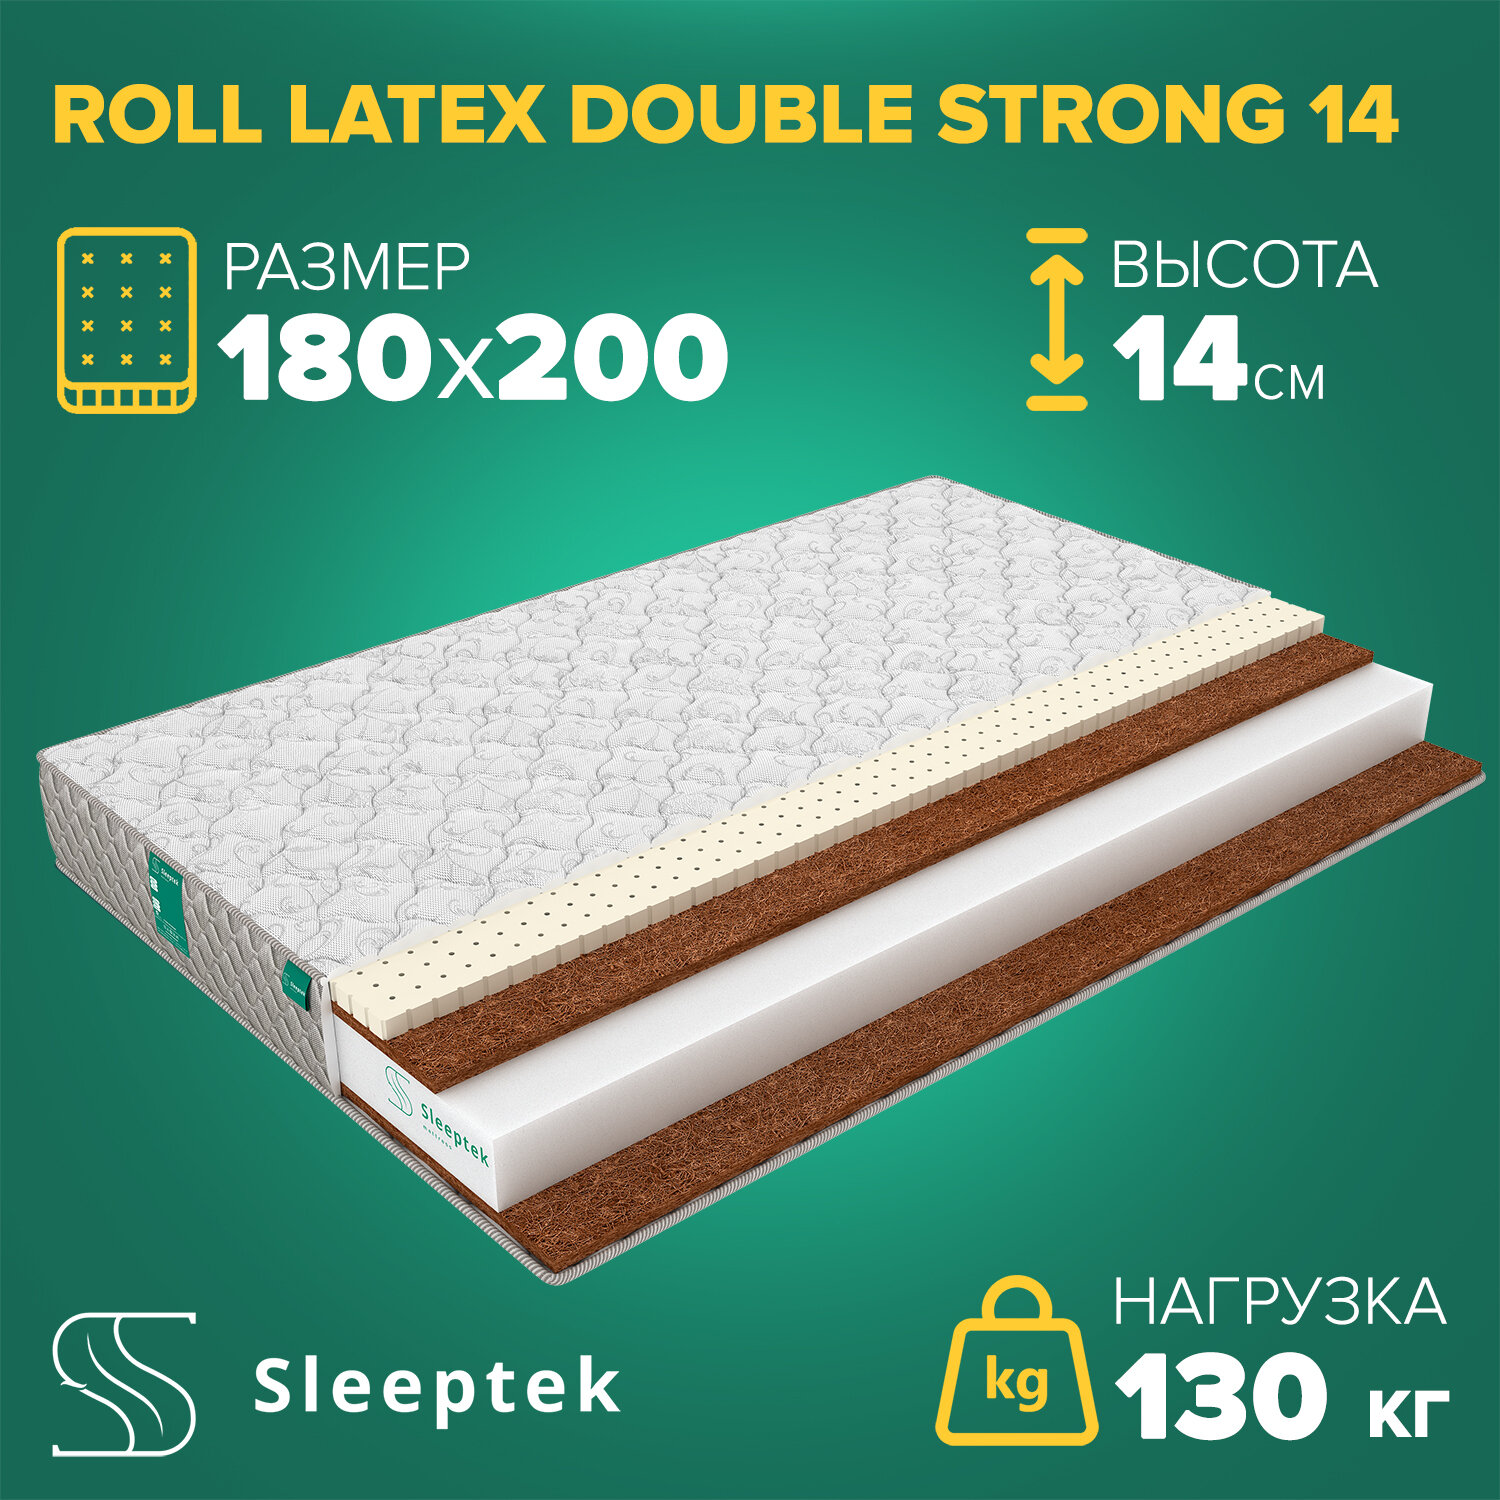 Матрас Sleeptek Roll Latex DoubleStrong 14 180х200